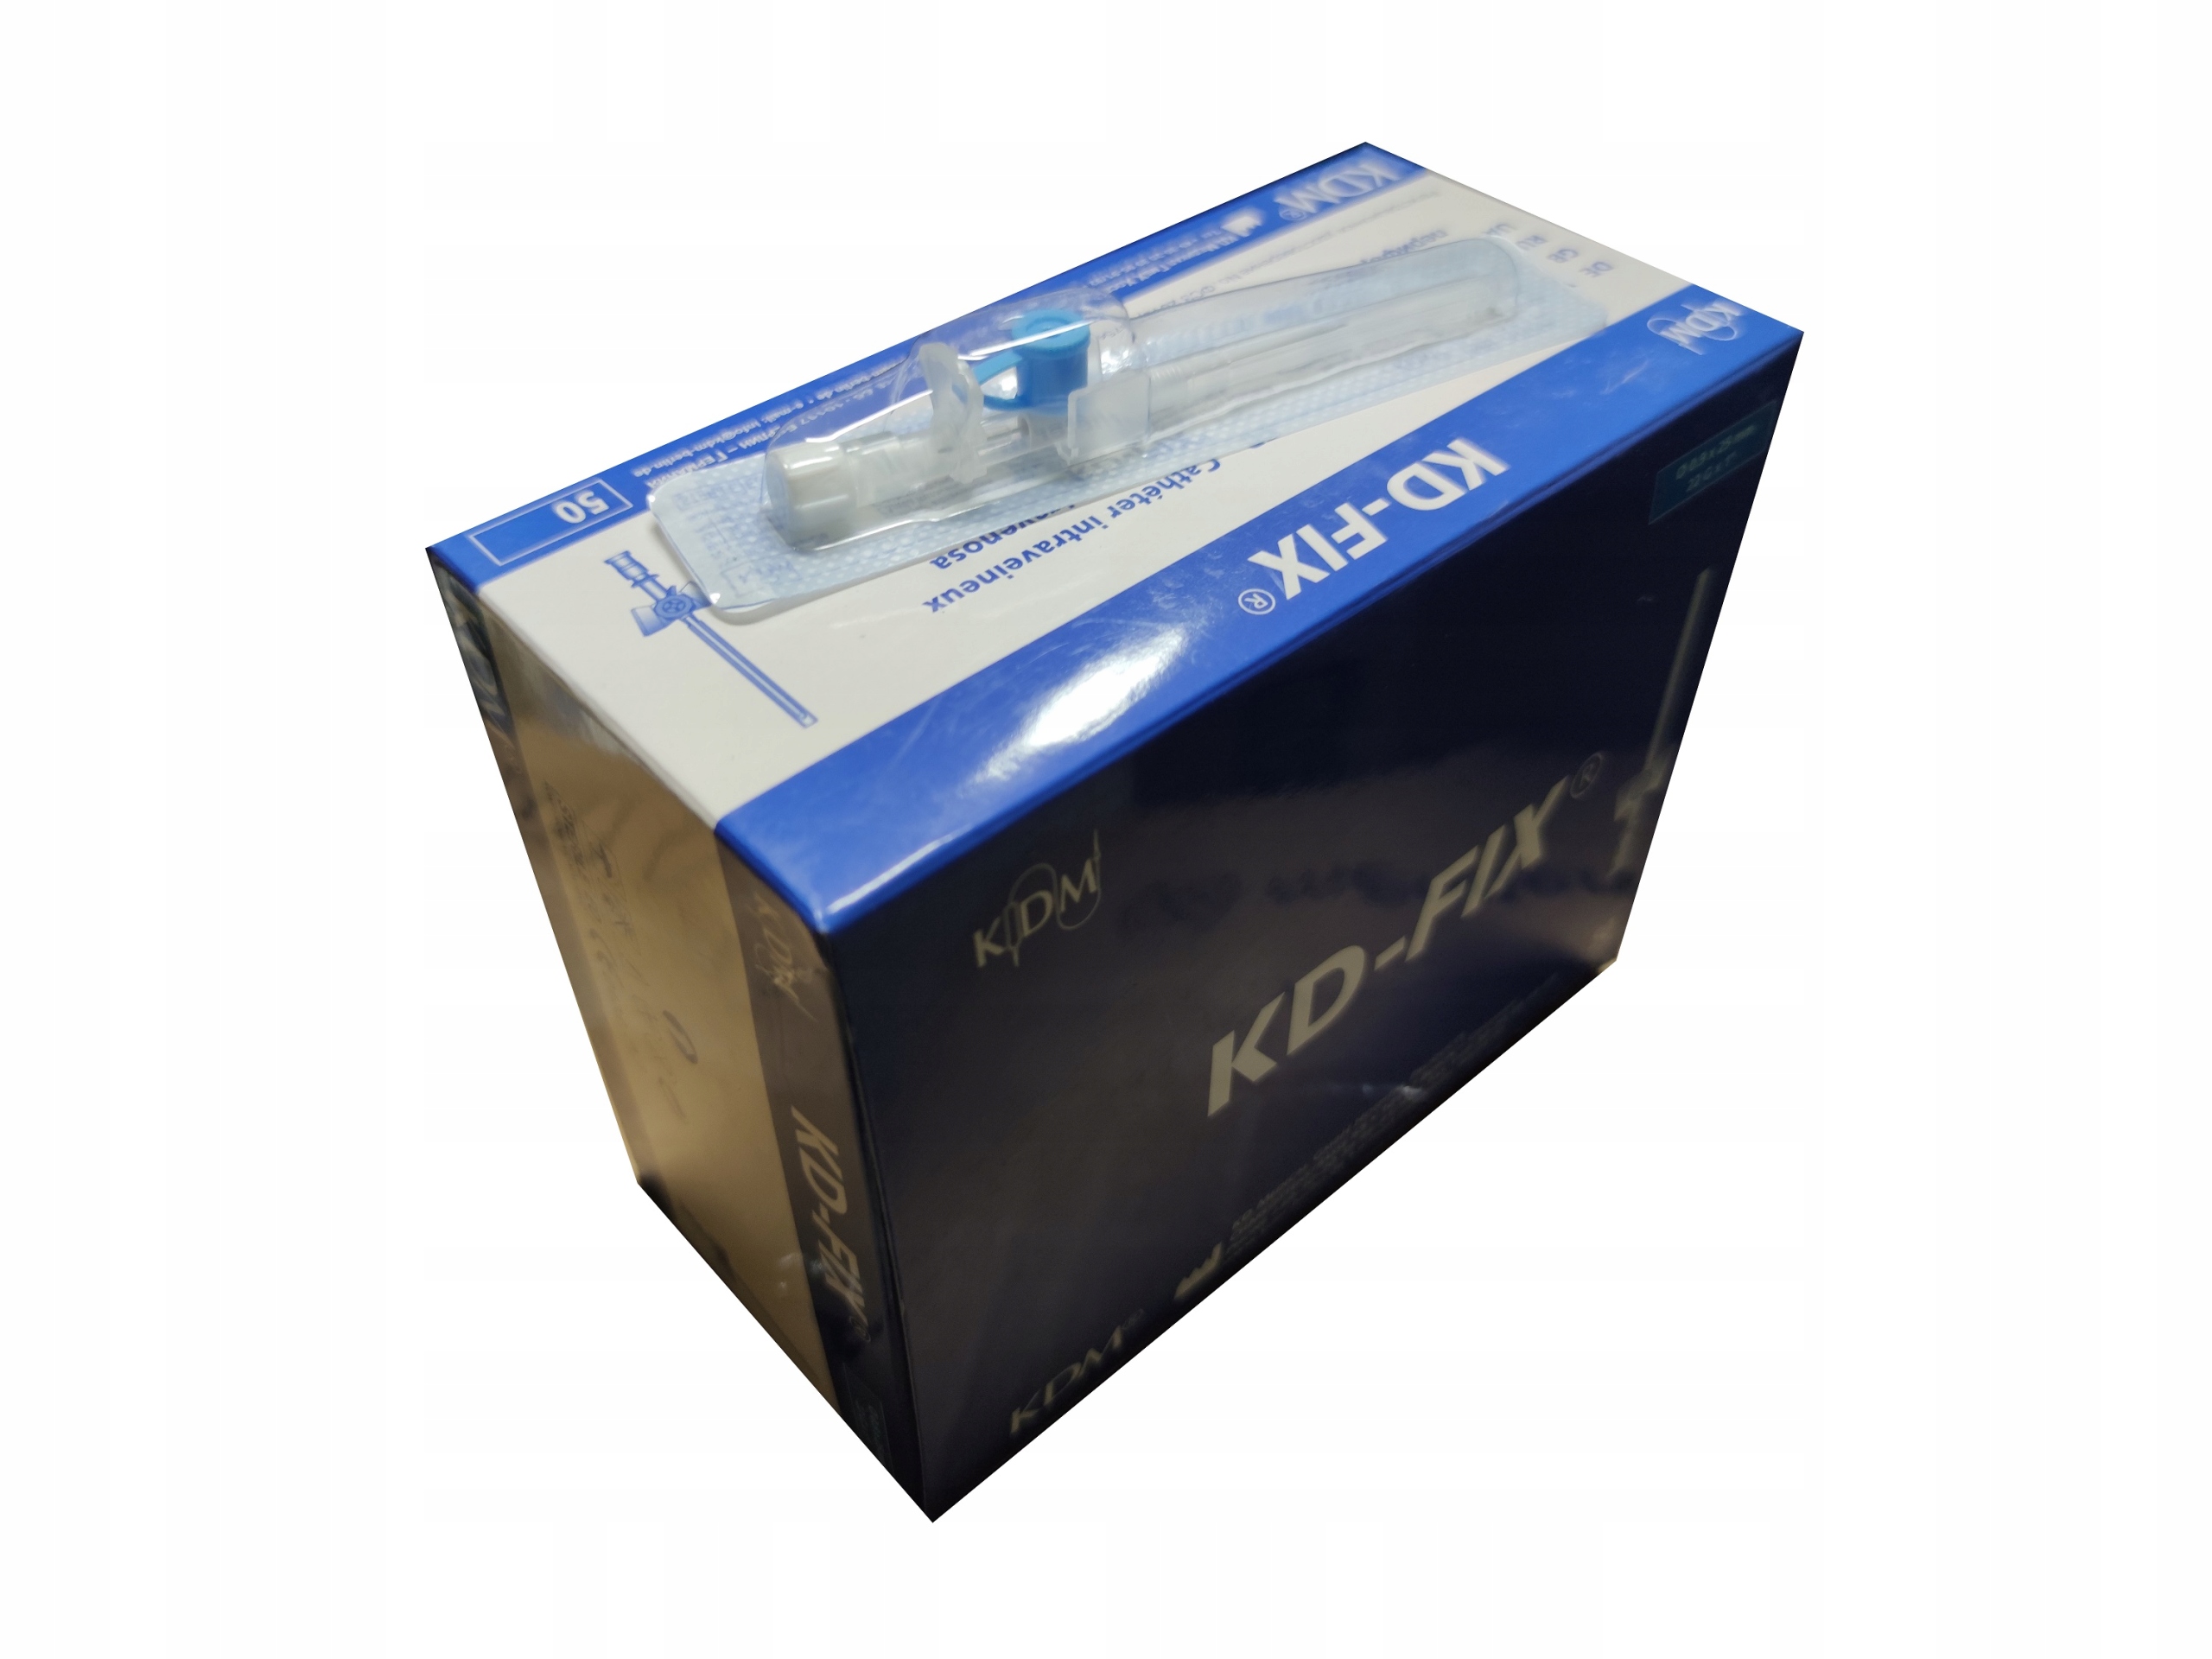 Канюля надувная KD-FIX blue 22G 0.9x25mm 50 шт.